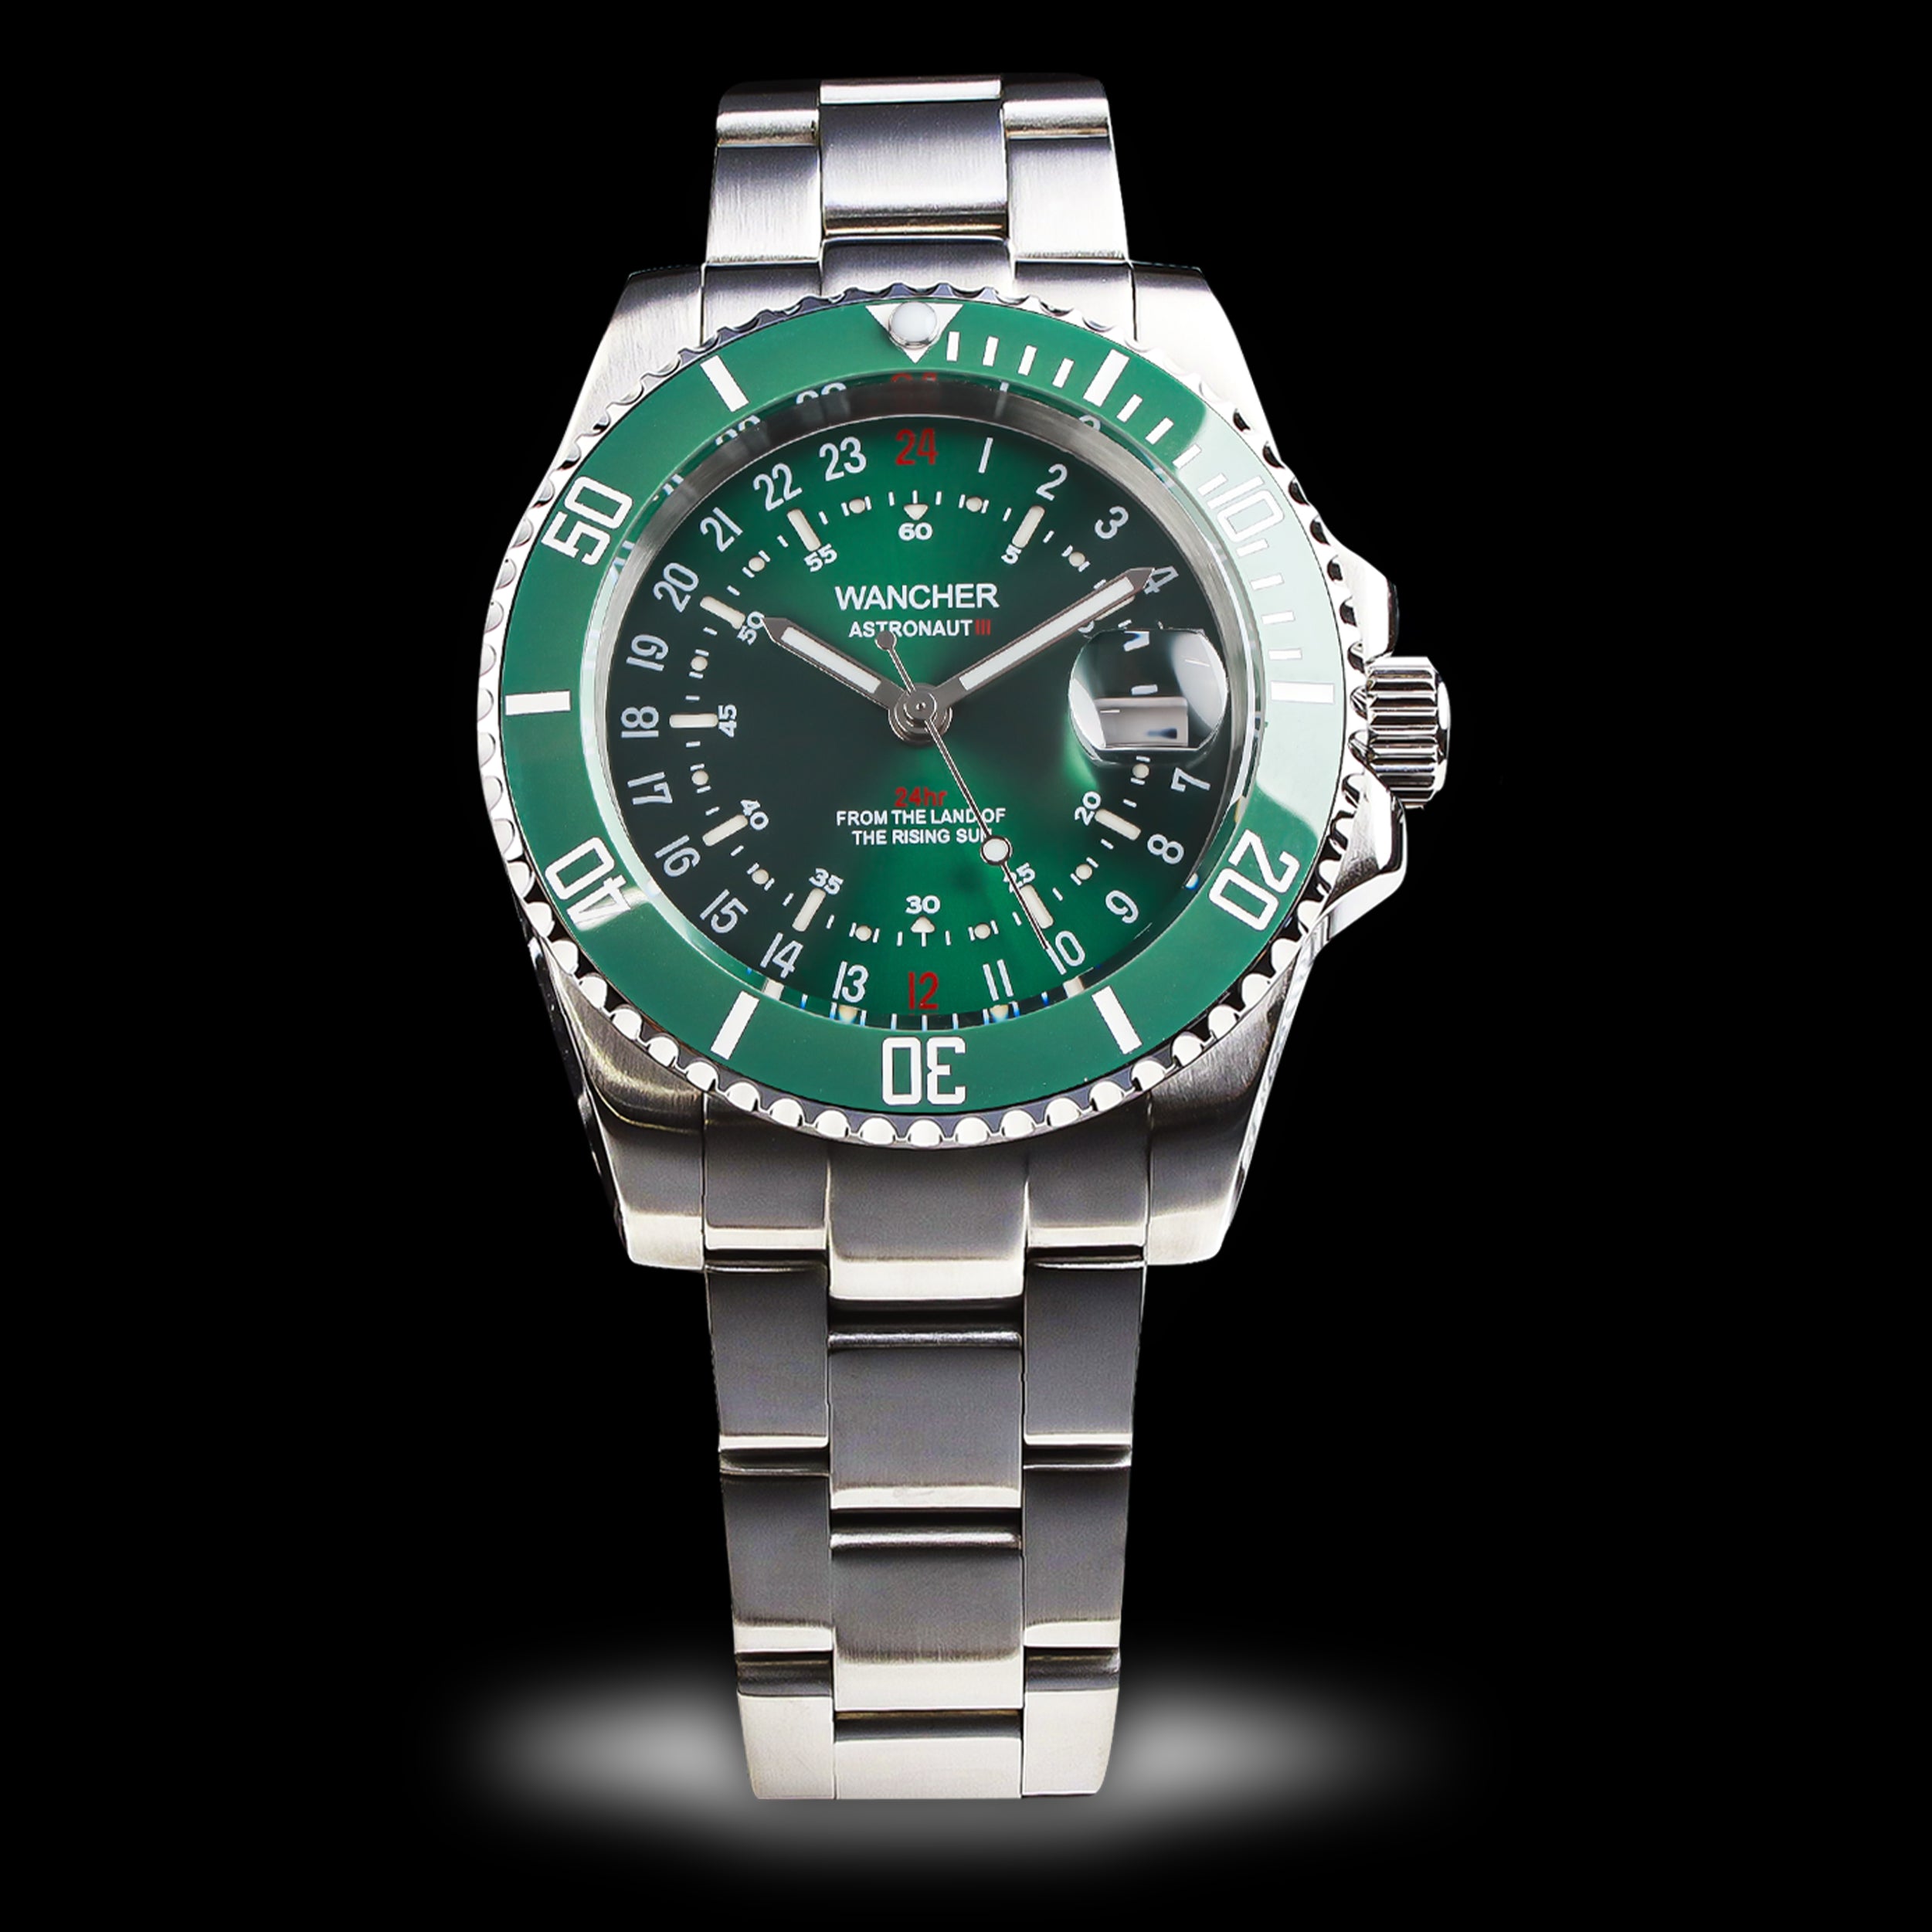 Wancher Watch Astronaut 3 Sun Burst Green Automatic Men's Watch